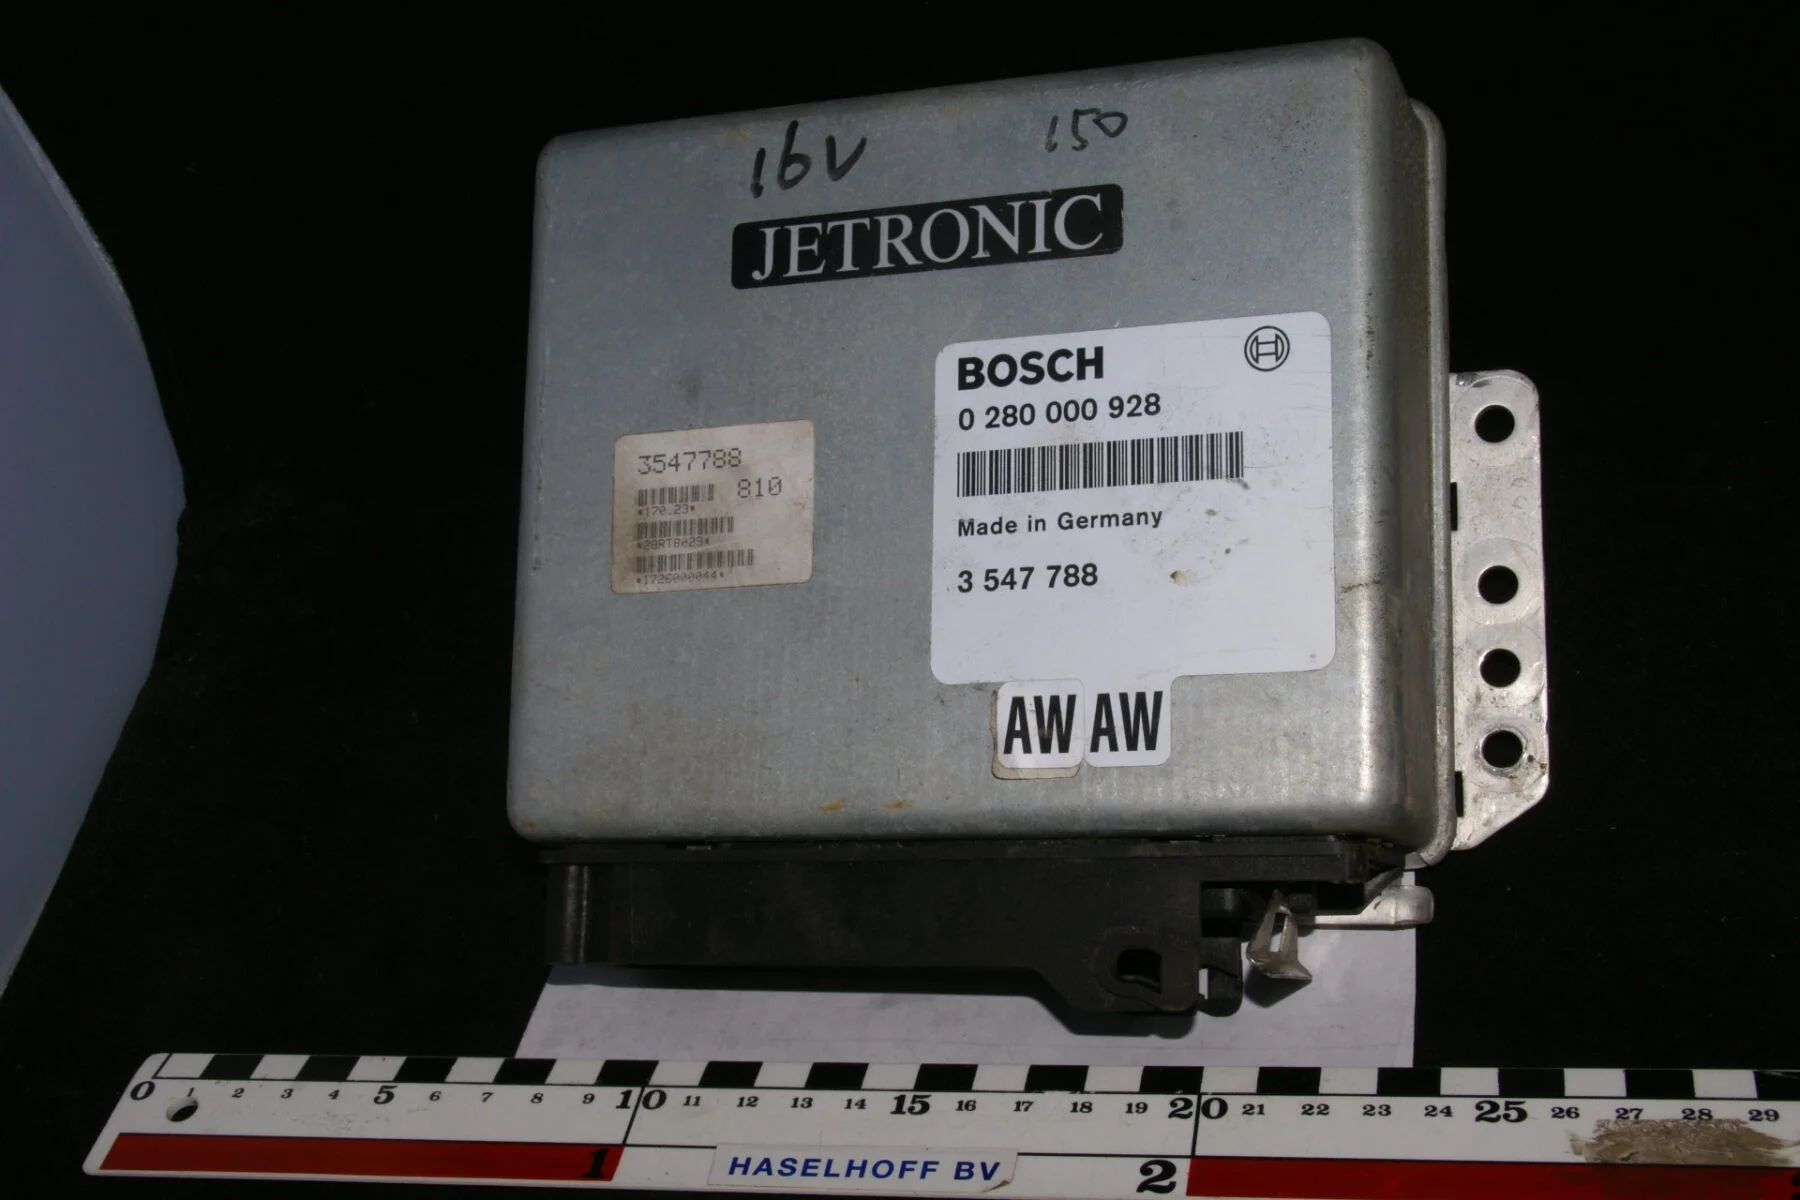 Computer Bosch Jetronic AW 16 valves 280000928-0